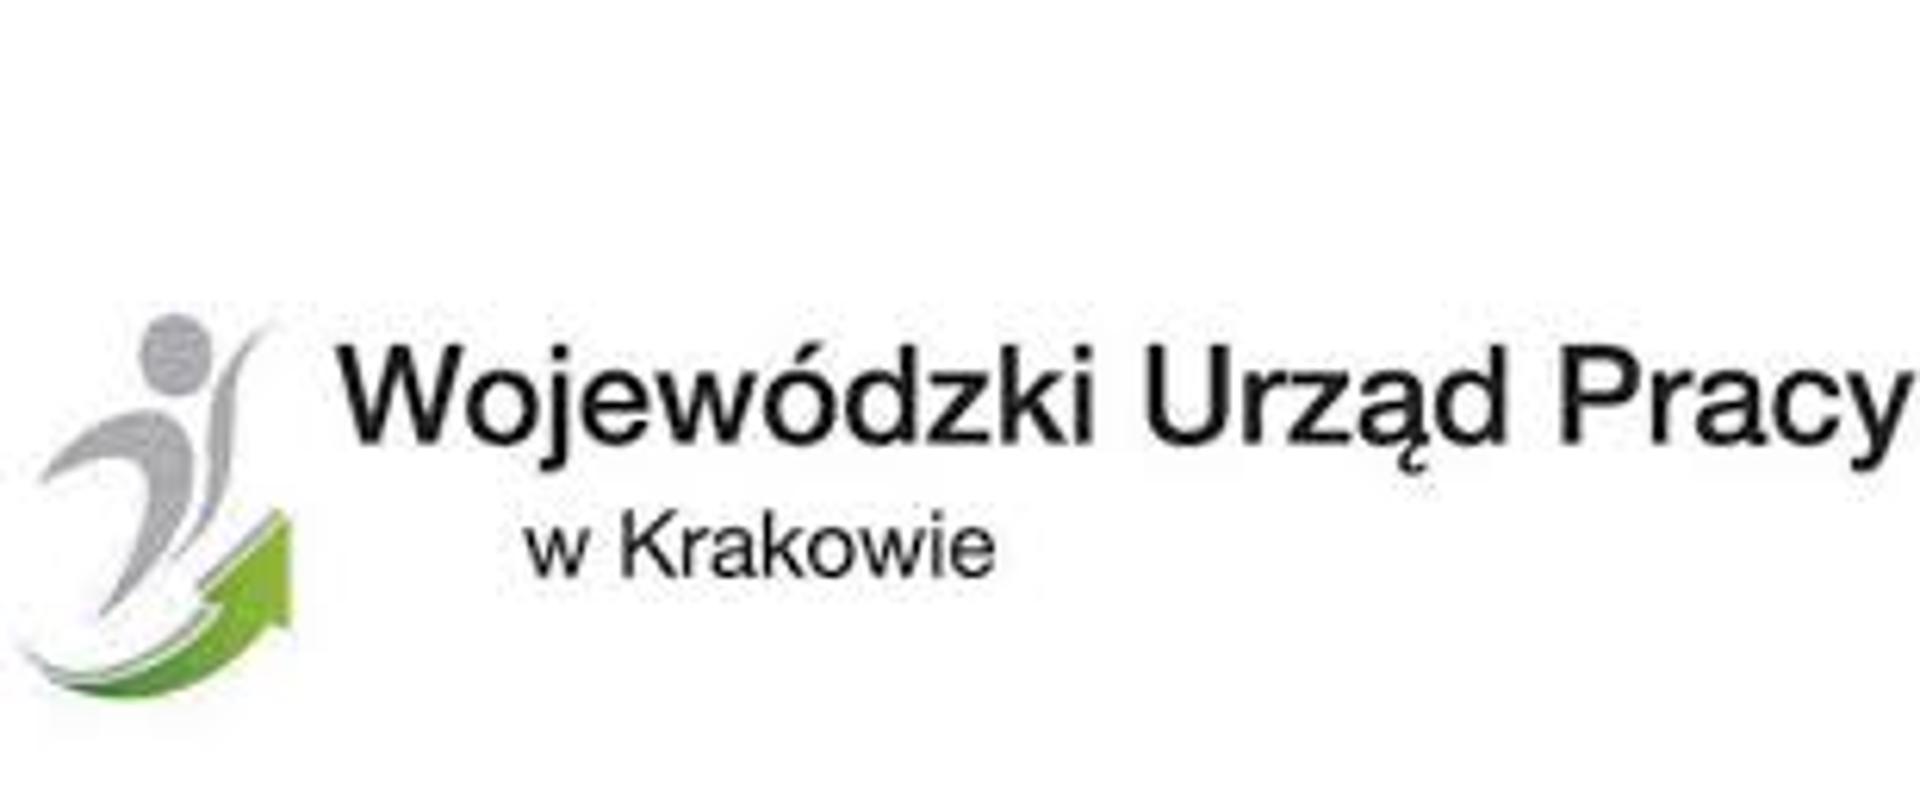 LOGO z napisem Wojewódzki Urząd Pracy w Krakowie